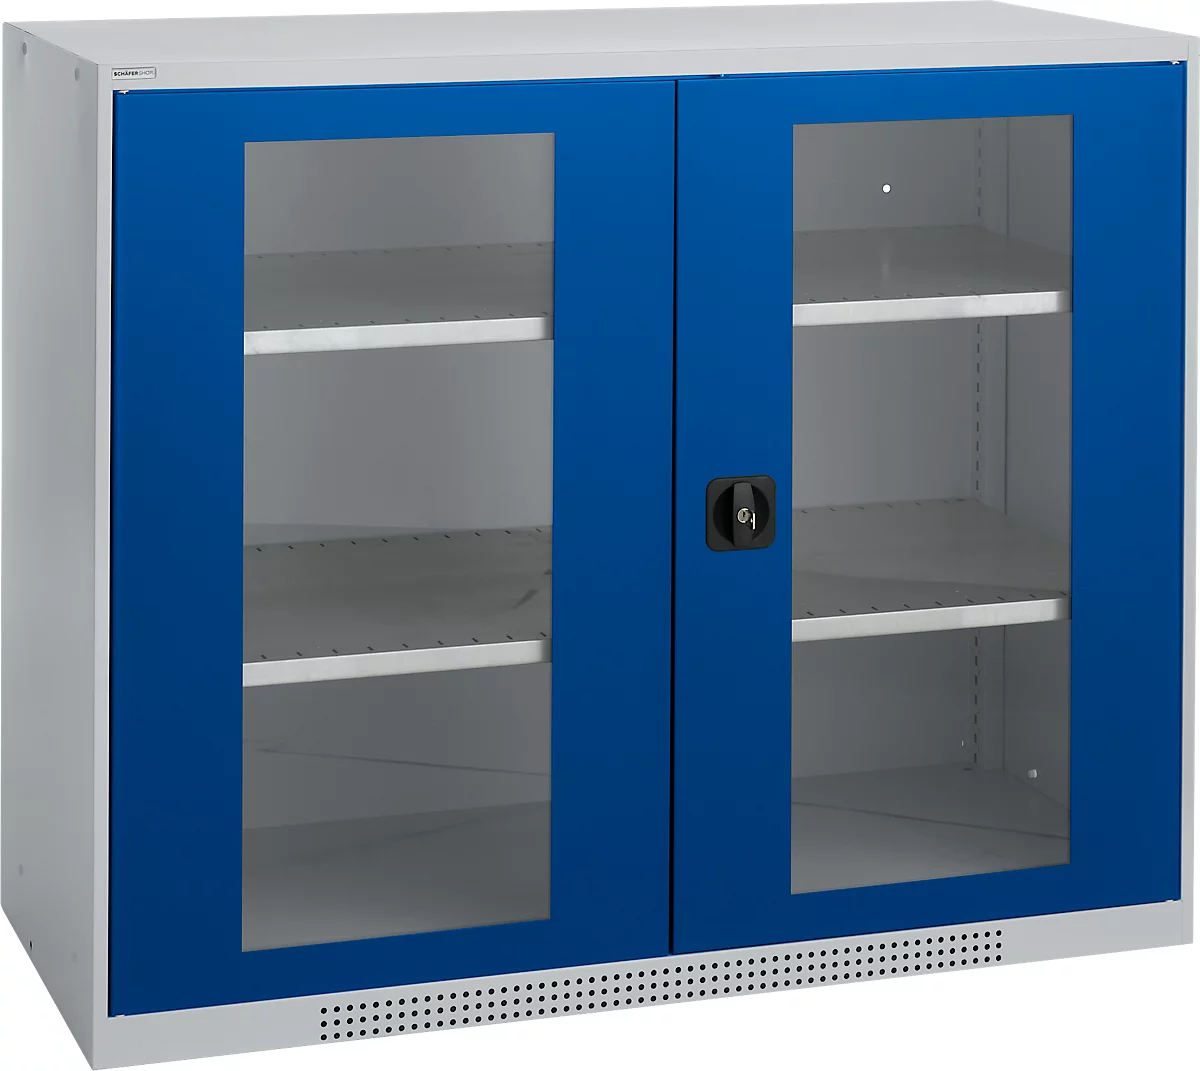 Schäfer Shop Genius armario de doble puerta FS, acero, ventana, agujeros de ventilación, A 1343 x P 520 x A 1105 mm, 3 OH, aluminio blanco/ azul genciana, hasta 450 kg